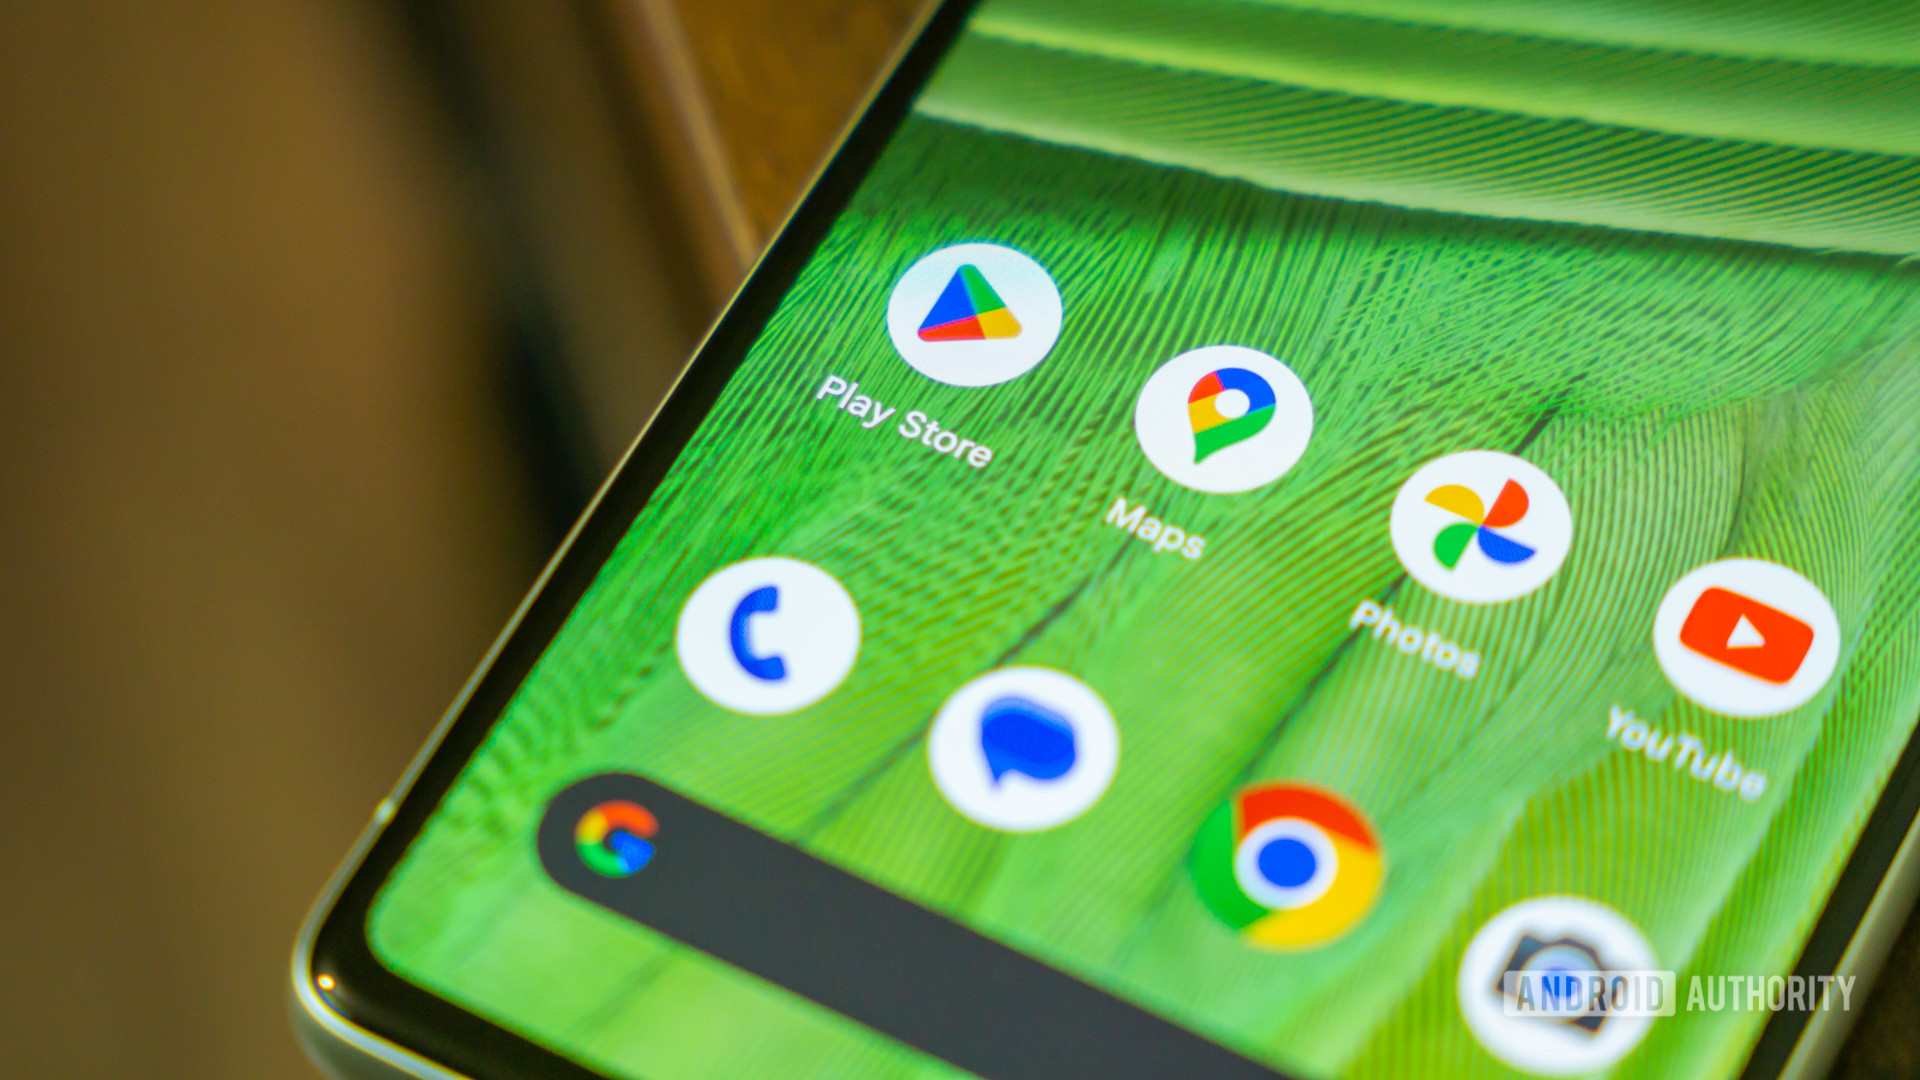 Google Play Store amplía la compatibilidad con la aplicación RMG para ofrecer nuevas formas de ganar dinero